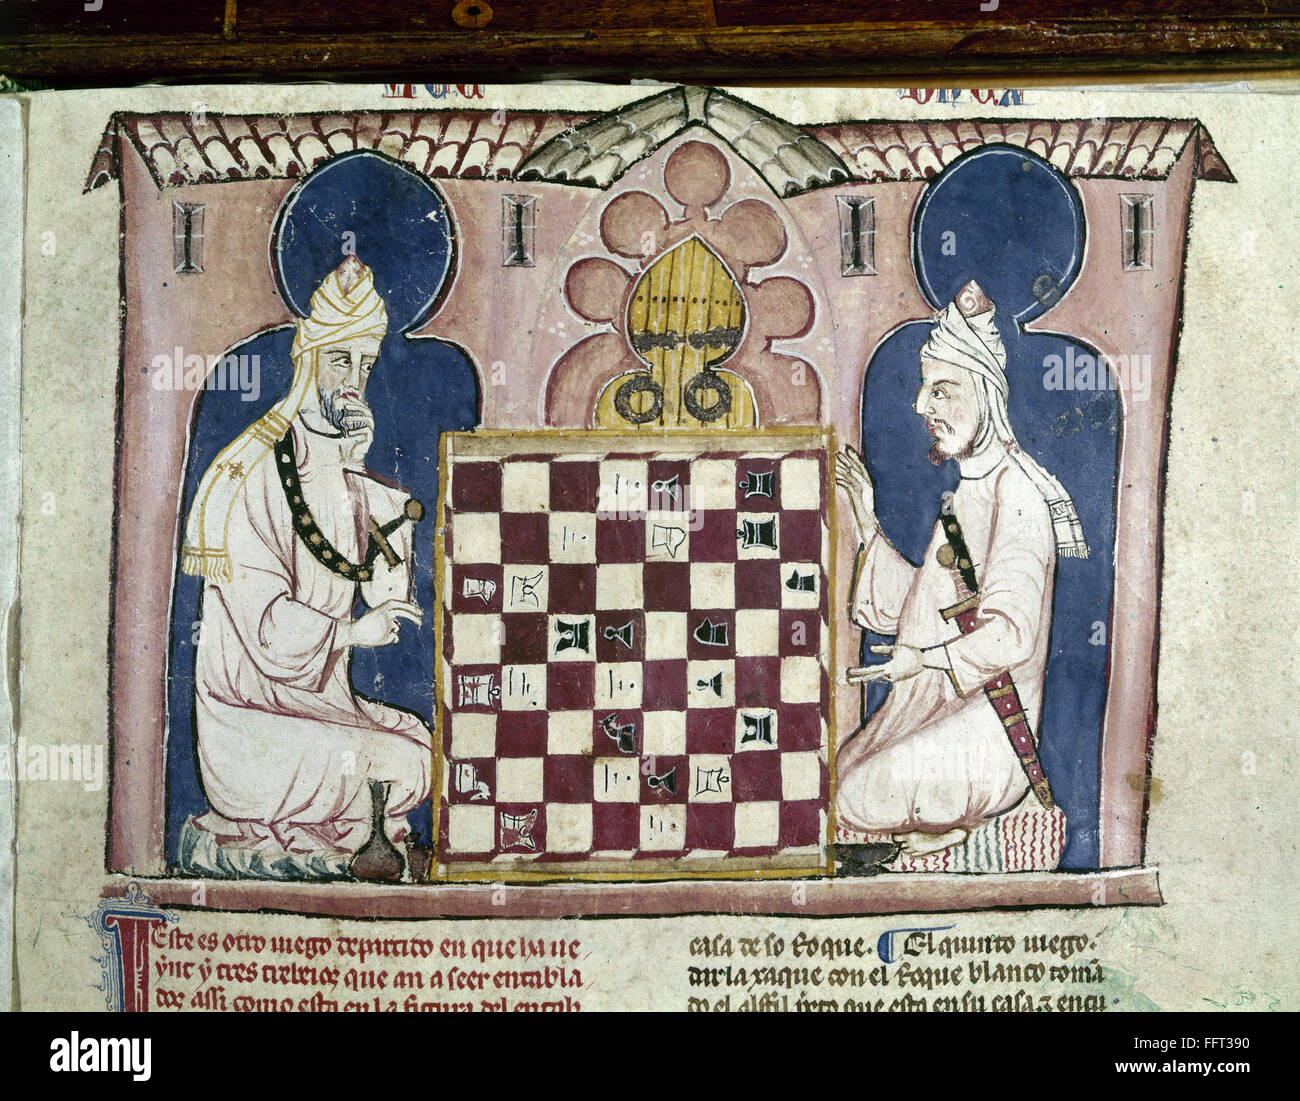 Первая историческая игра. Древние индийские шахматы чатуранга. Персидский шатрандж шахматы. Шатрандж (древние индийские шахматы). Шатрандж (древние индийские шахматы) фигуры.